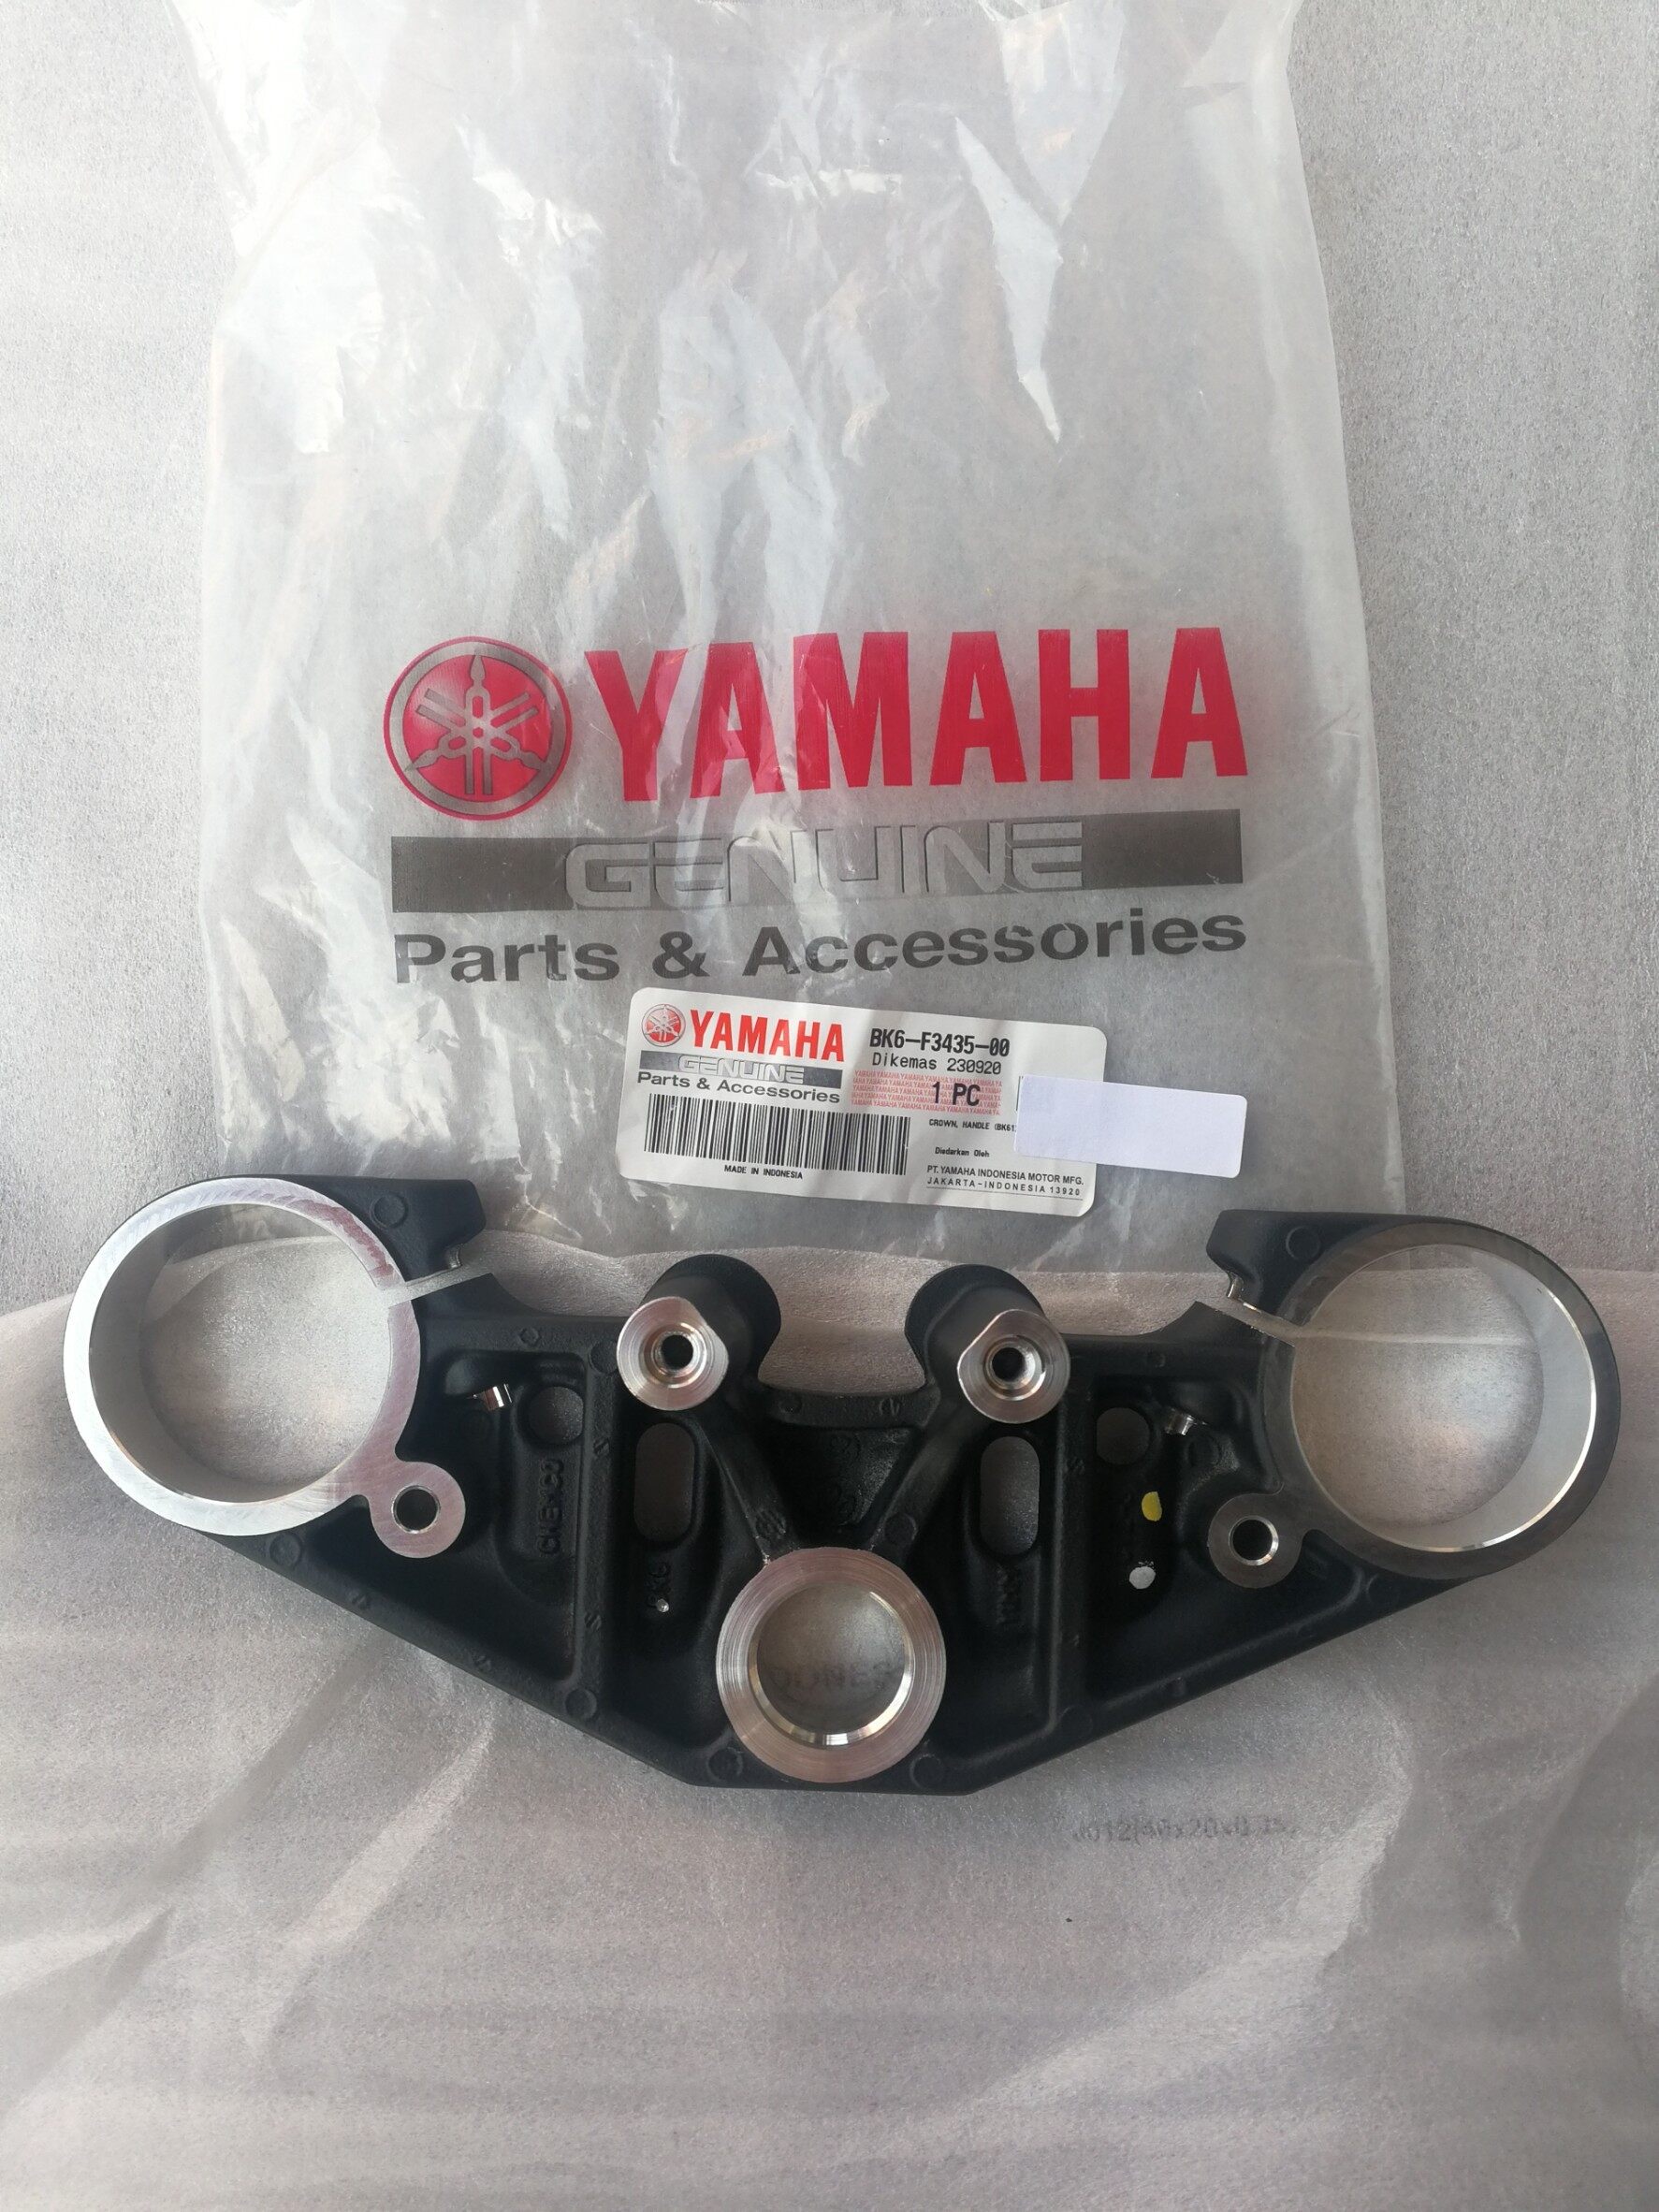 แผงคอบน Yamaha R-15 New แท้ศูนย์ (Crown, Handle BK6-F3435-00)